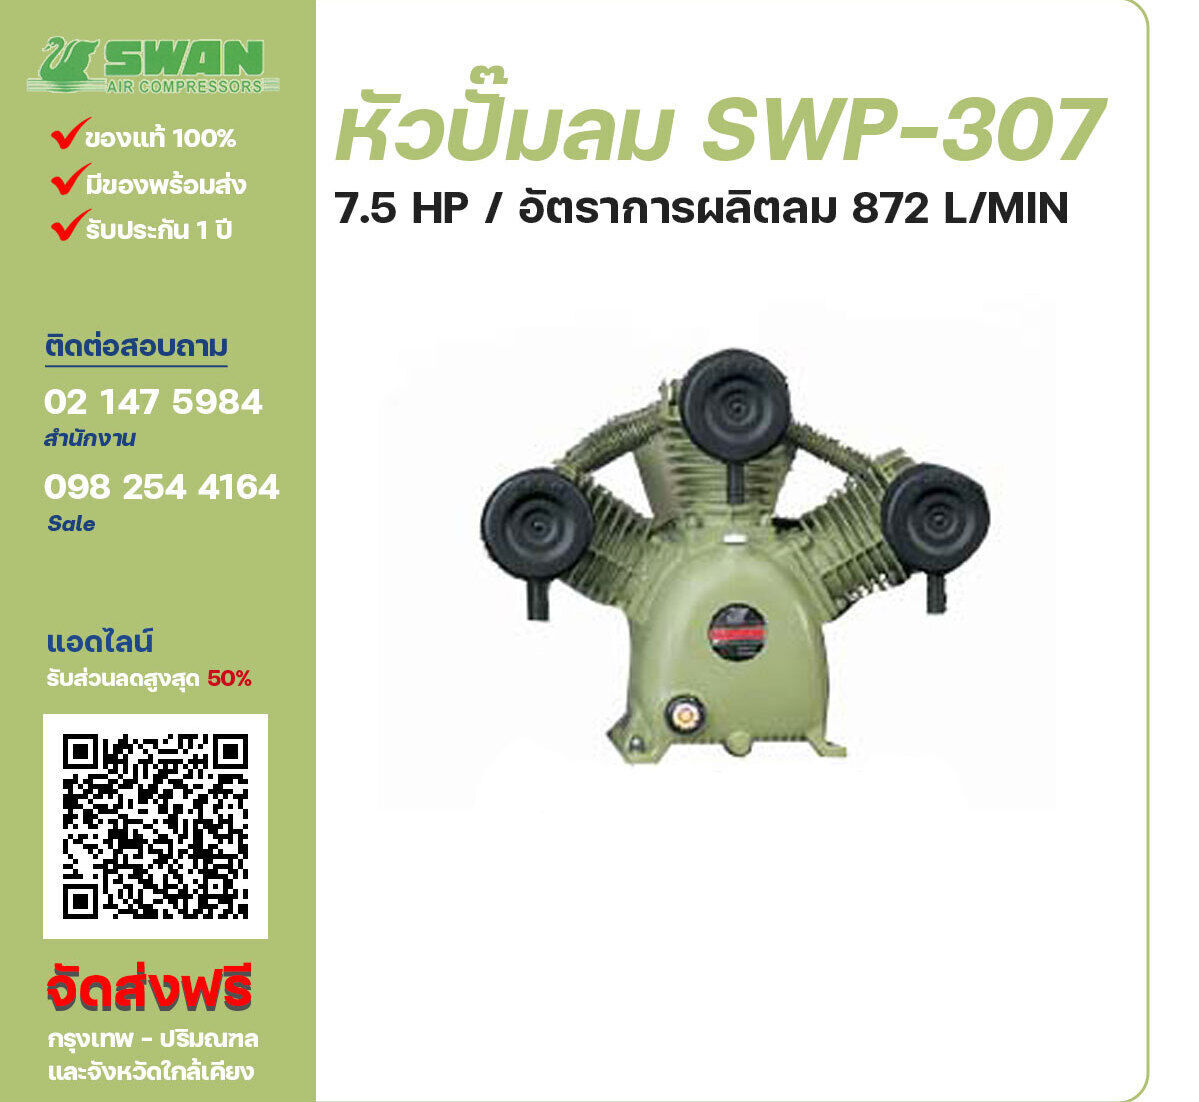 จำหน่ายหัวปั๊มลมสวอน ของแท้ 100% SWAN Bare Compressor รุ่น  SWP-307 ขนาด 7.5 แรงม้า อัตราการผลิตลม 872 ลิตร / นาที รับประกัน 3 เดือน ตามเงื่อนไขของบริษัทฯจัดส่งฟรี กรุงเทพ-ปริมณฑล